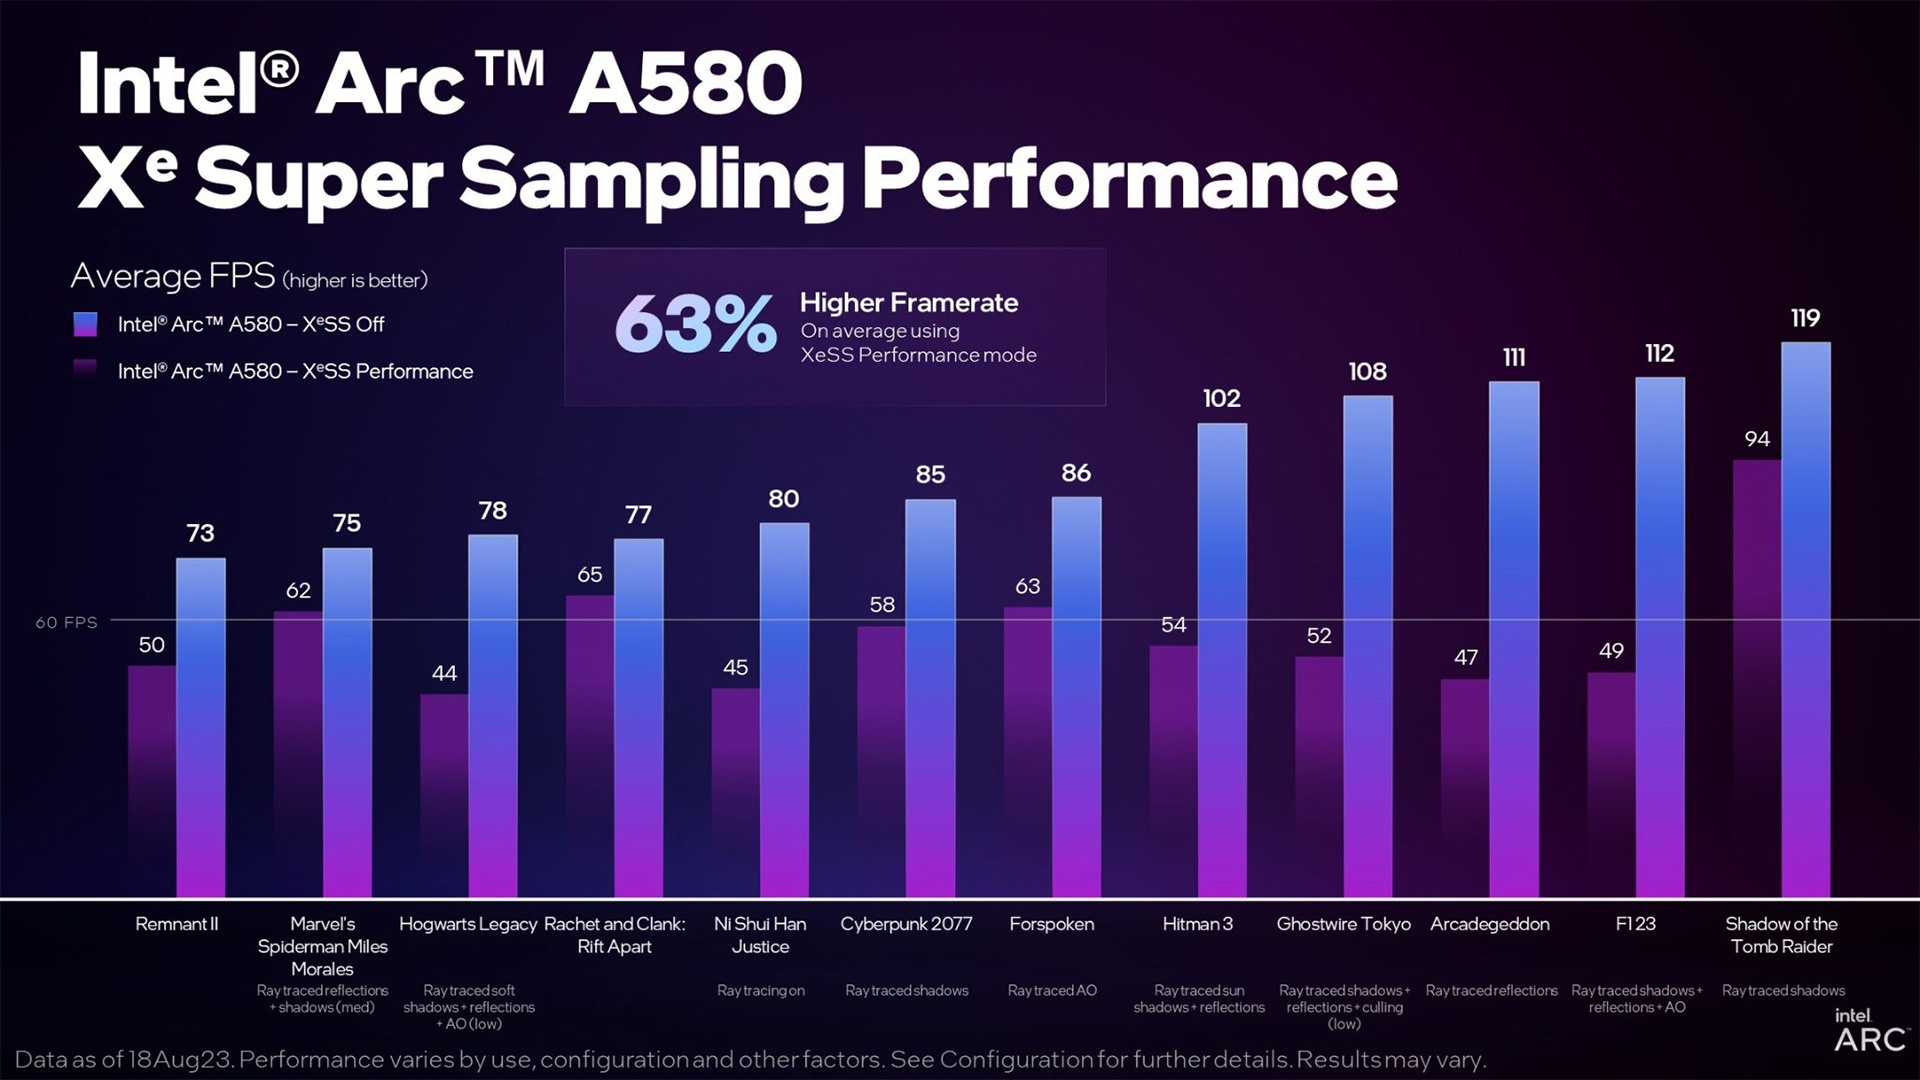 (La performance montrée représente les améliorations FPS apportées par la fonctionnalité XeSS (Source : Intel))